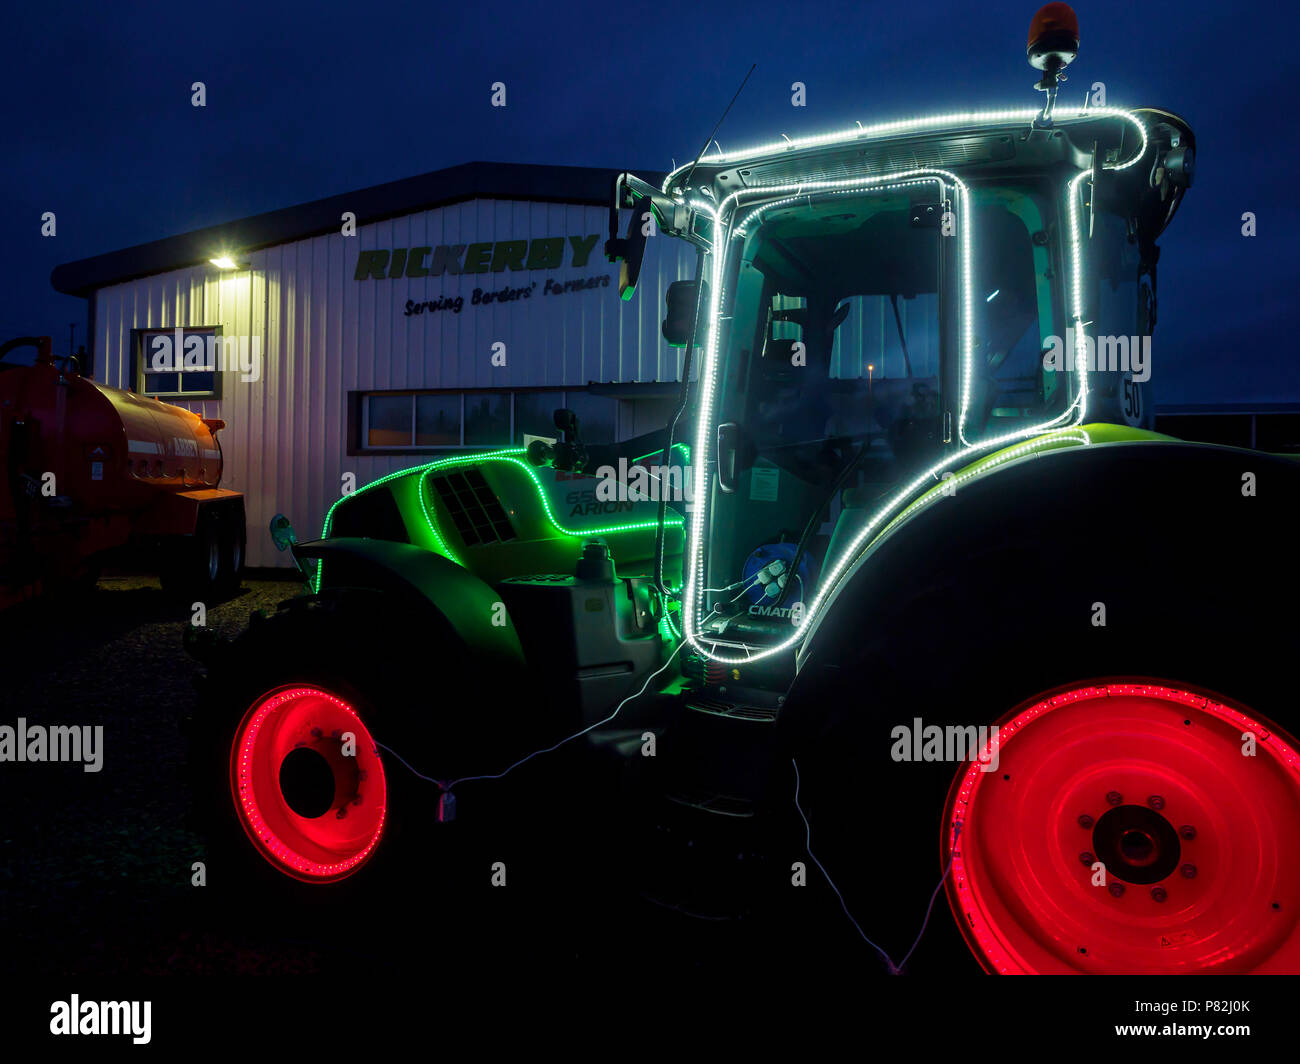 Stagione di Natale pubblicità - in Cornhill in Northumberland, trattore concessionari Riccurby utilizzare strisce LED per decorare un trattore e la cabina sul piazzale. Foto Stock